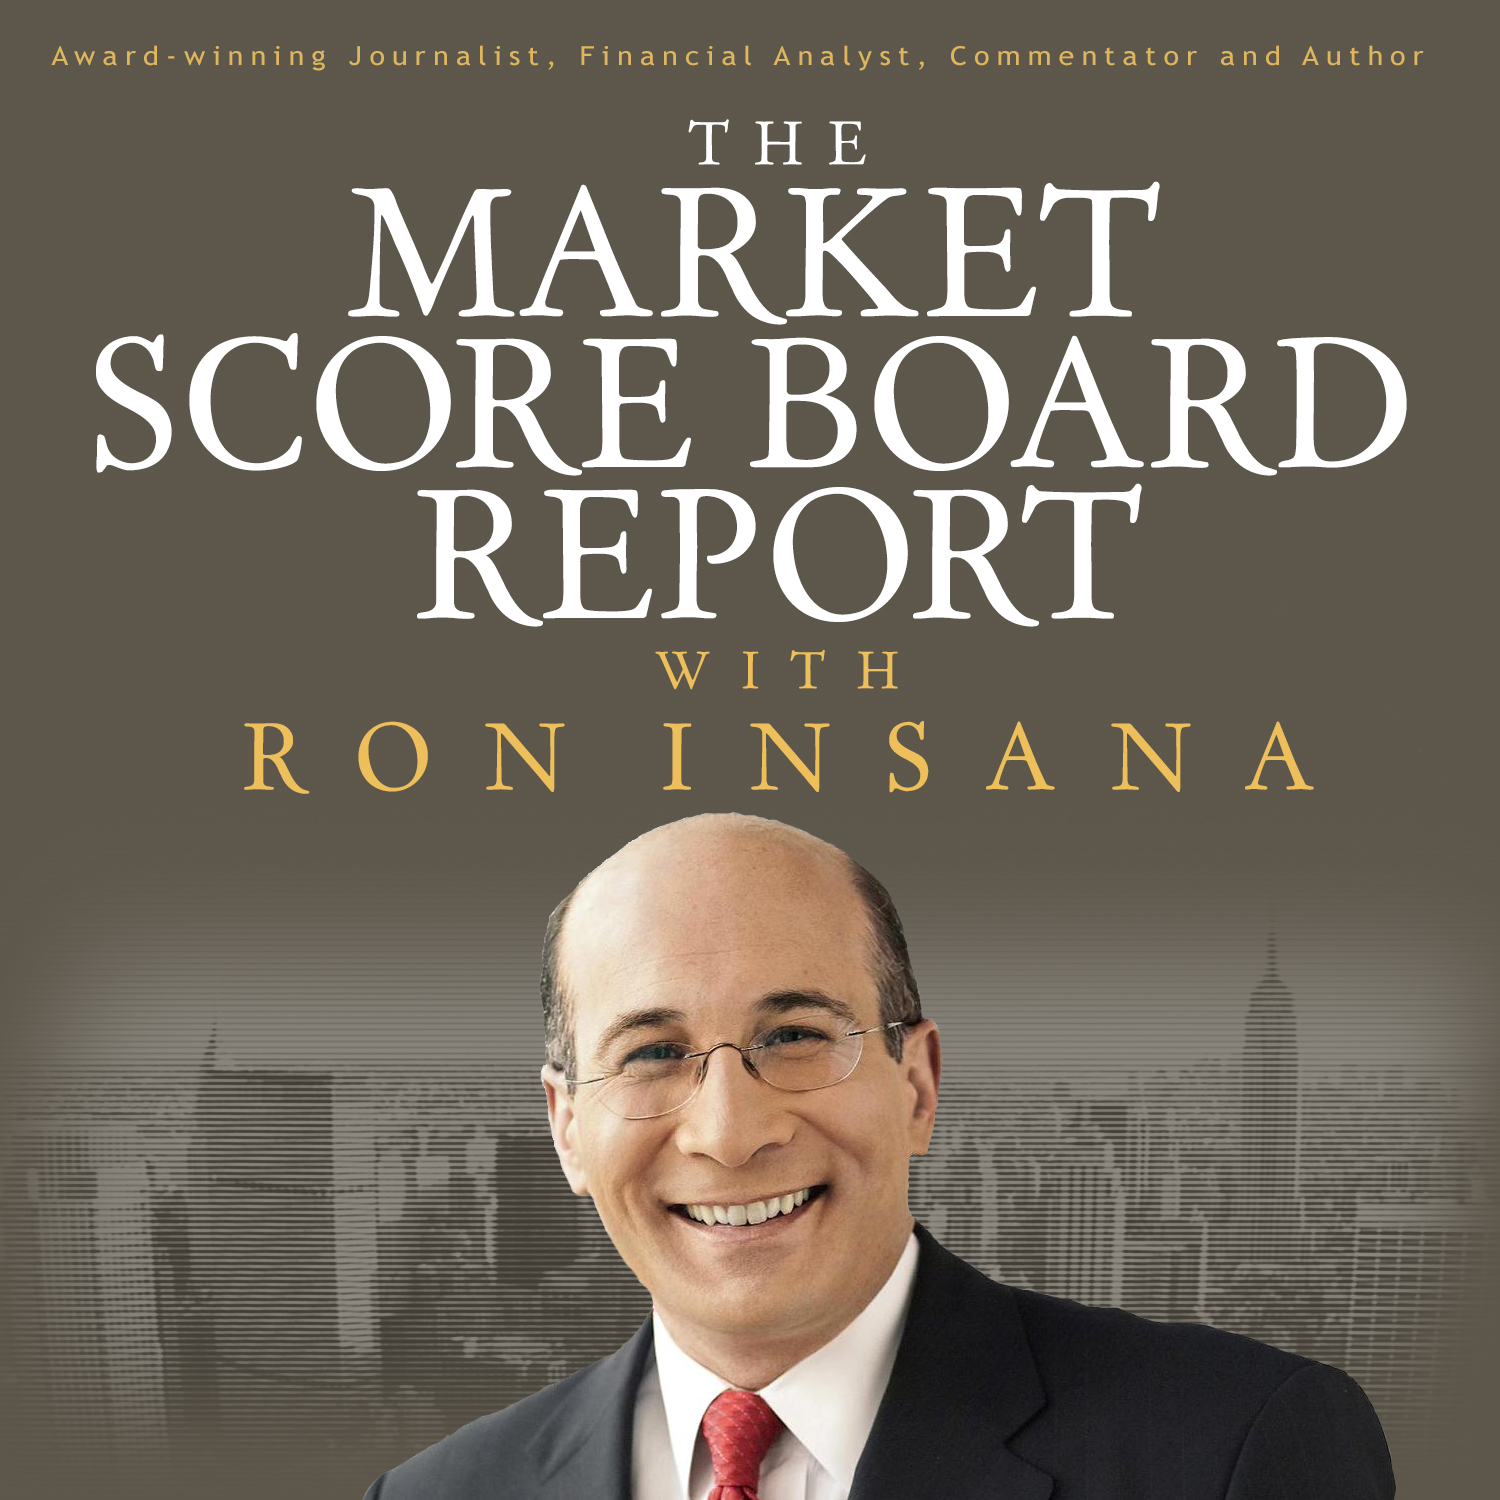 The Market Score Board Report with Ron Insana